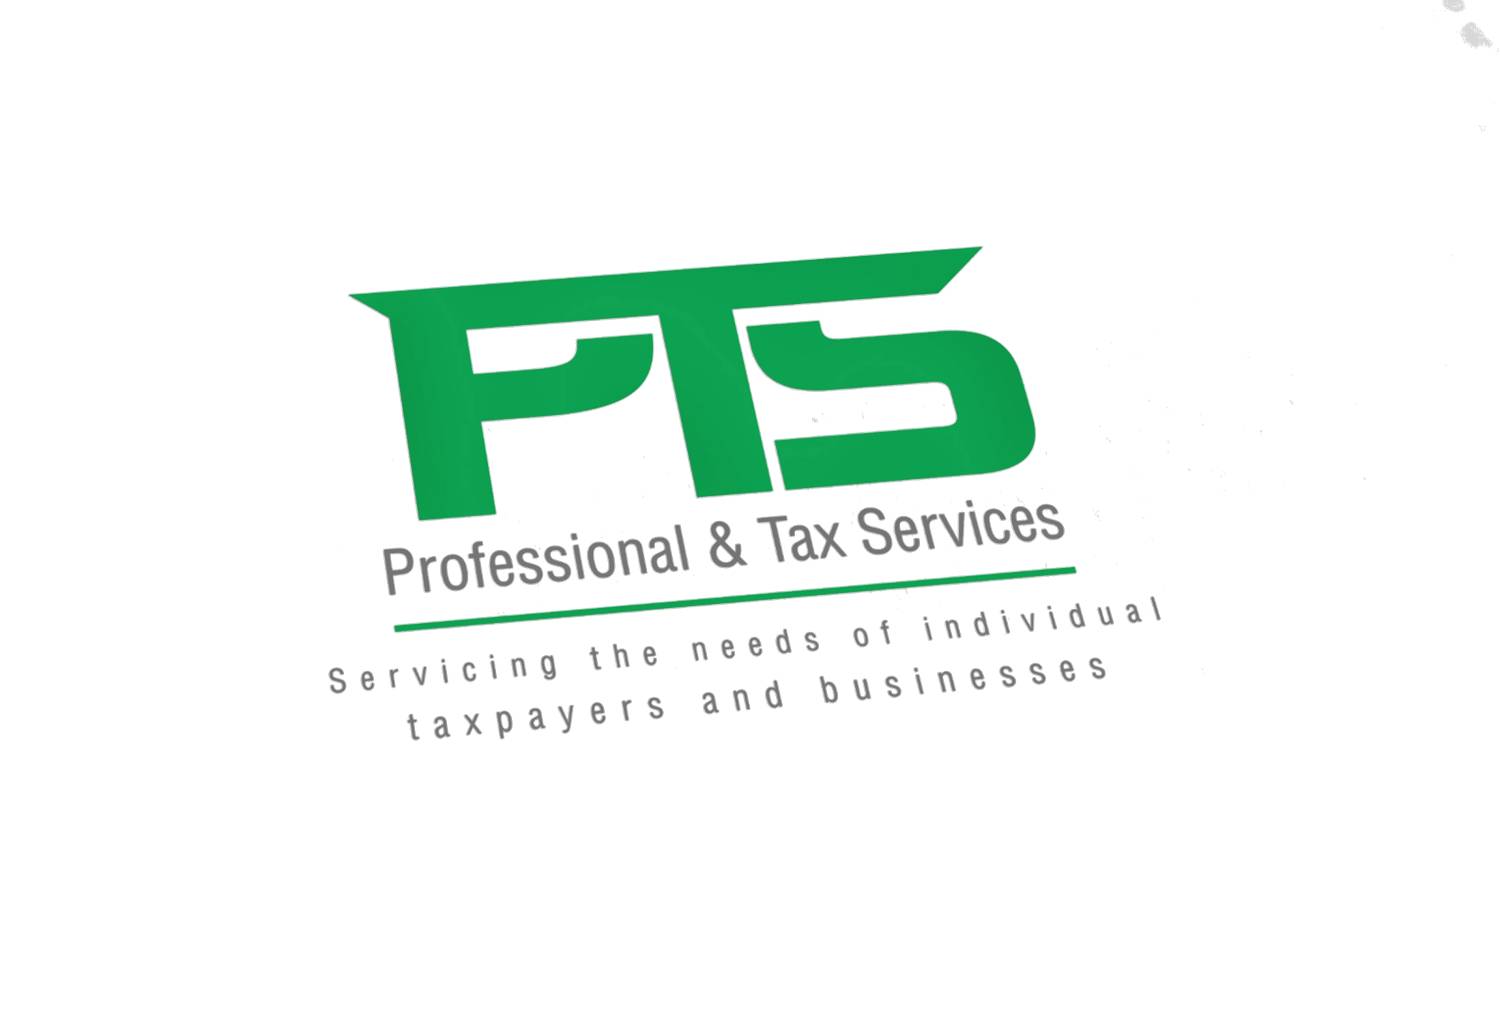 Professional & Tax Services 826 W Elm St, Rockmart Georgia 30153